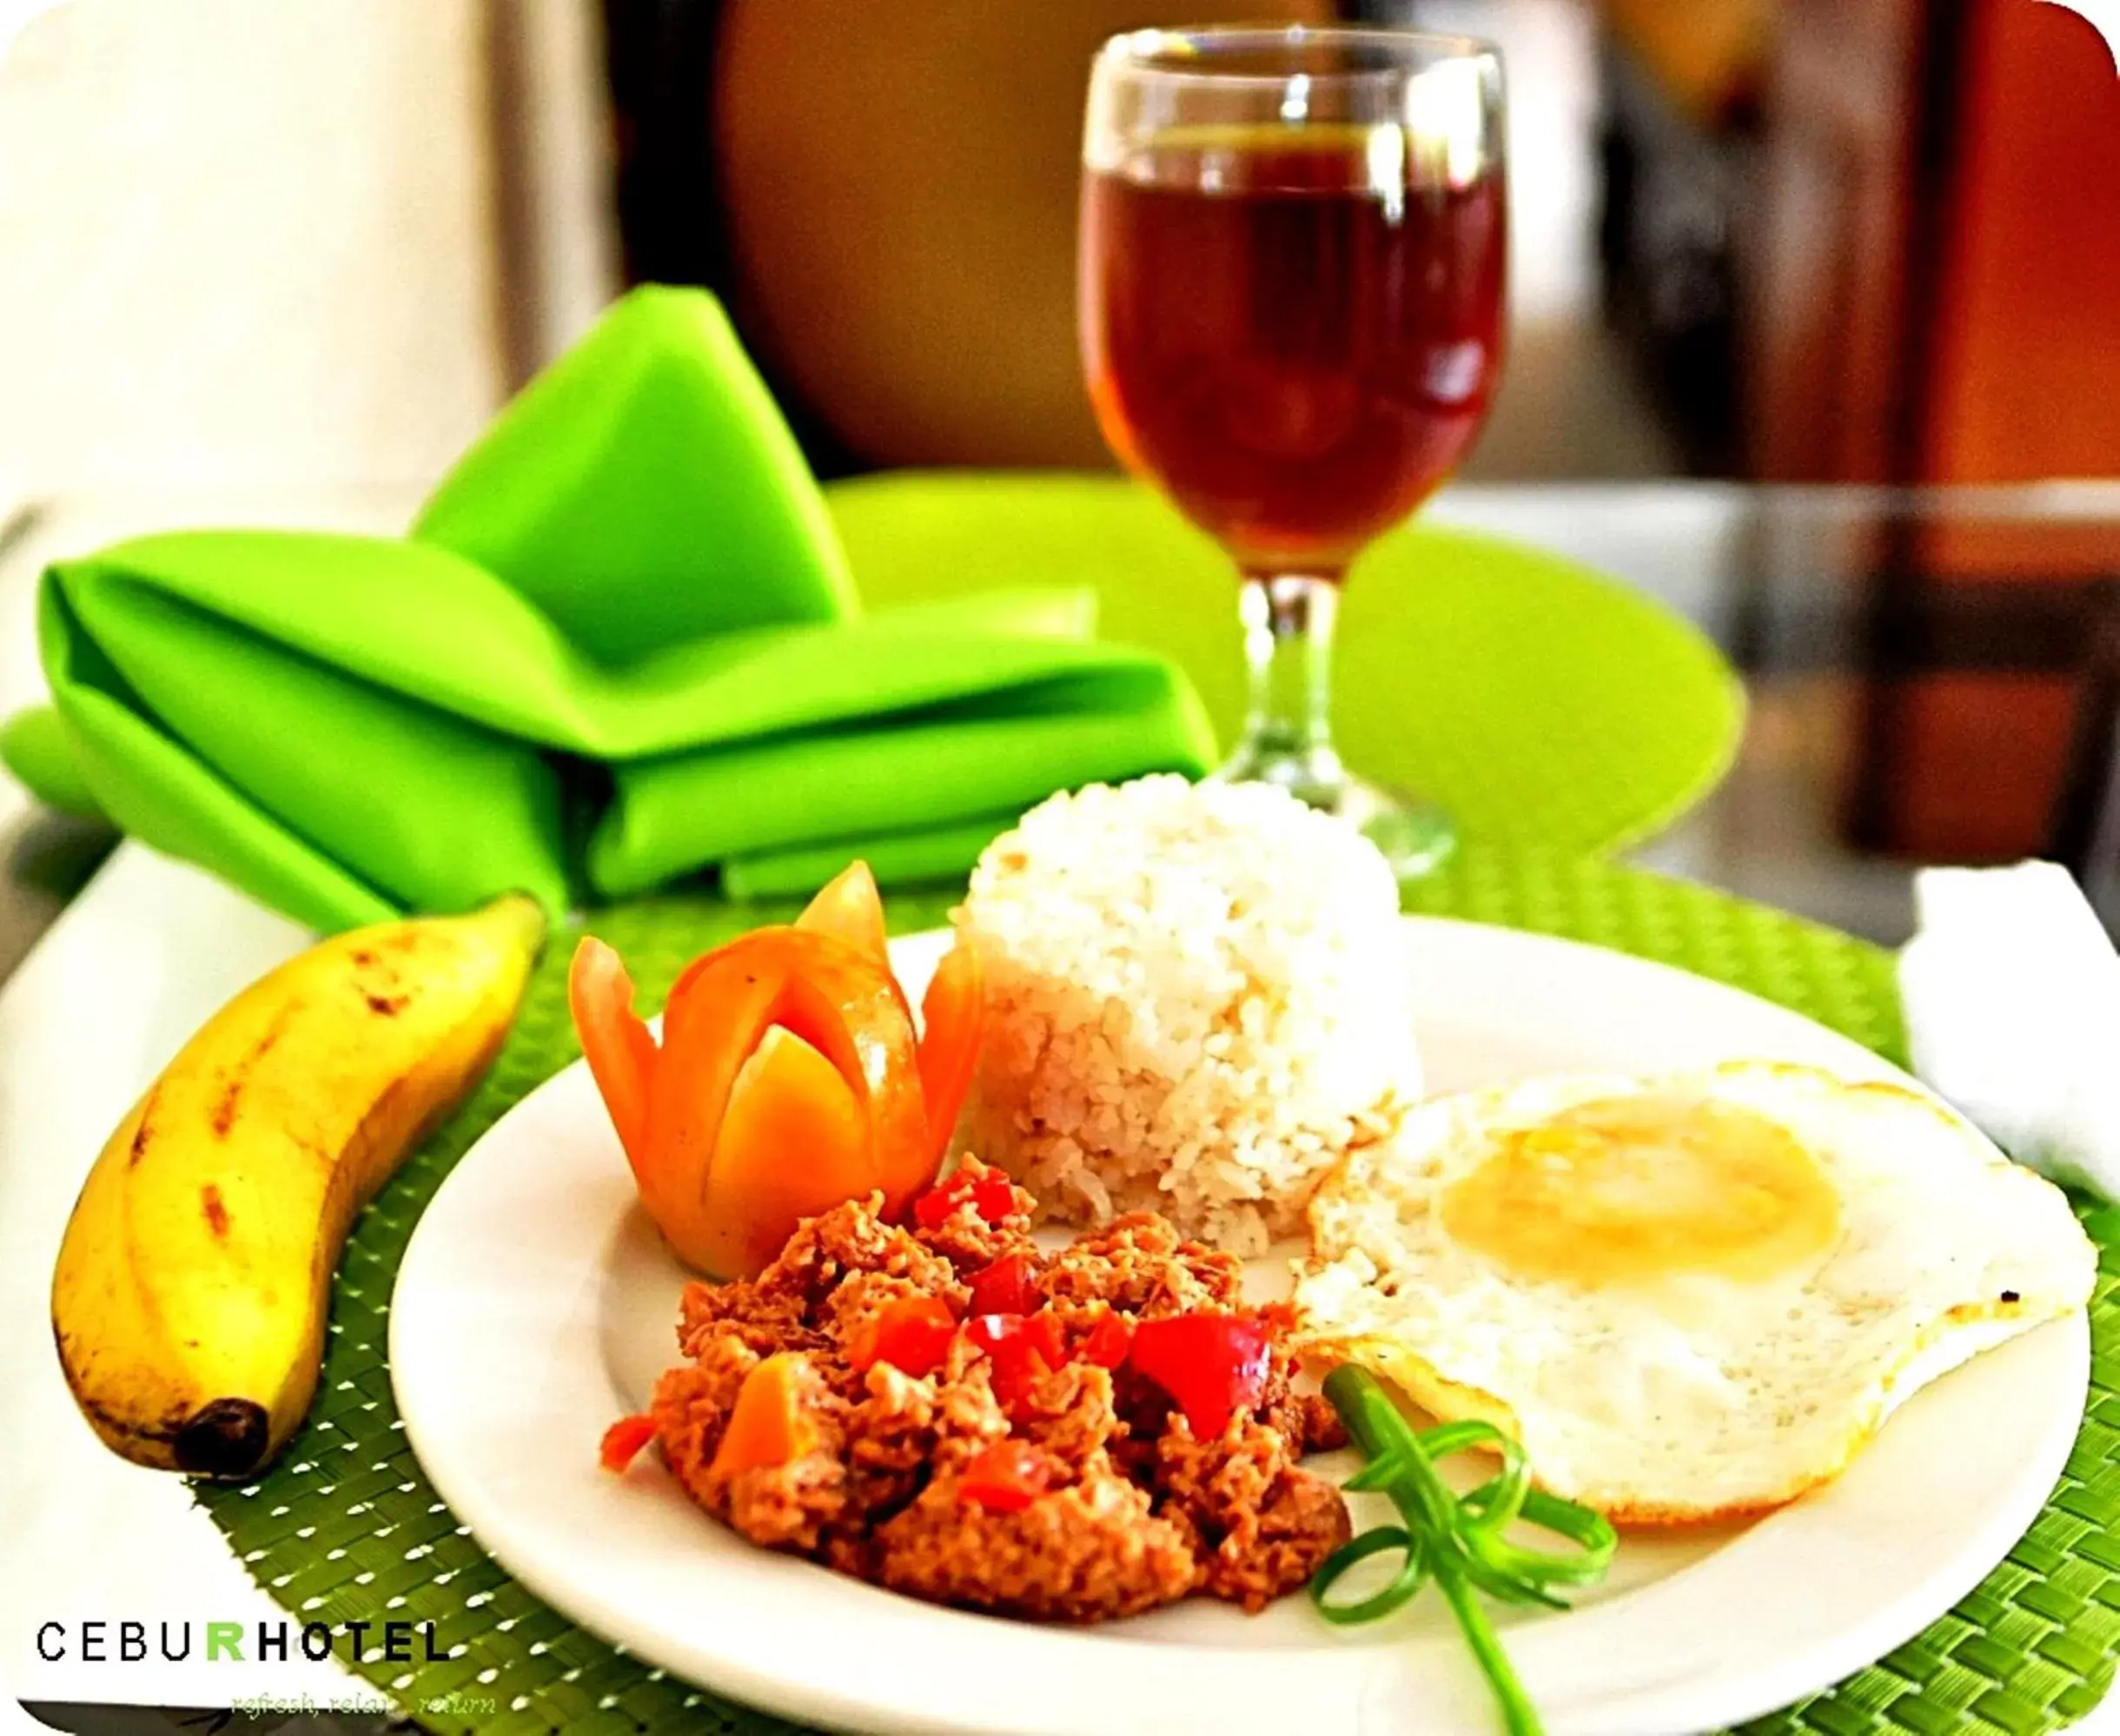 Food in Cebu R Hotel Capitol